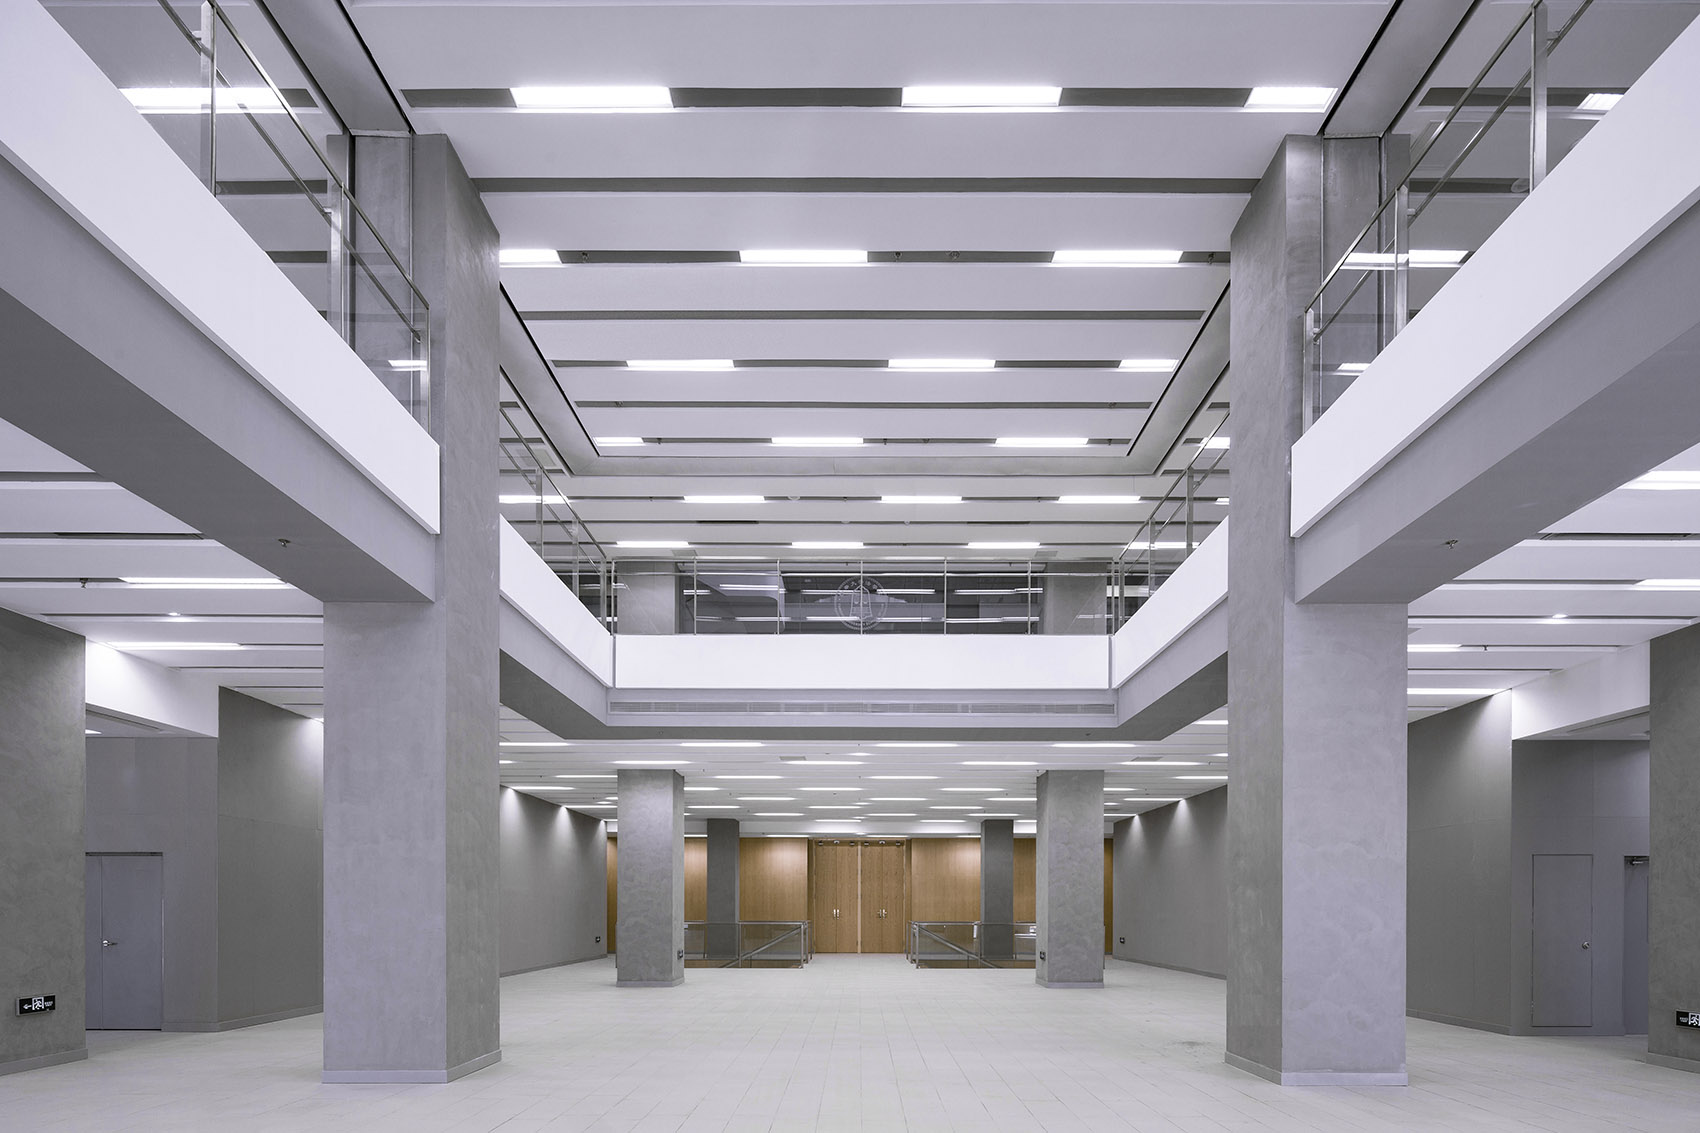 Law school library corridor design